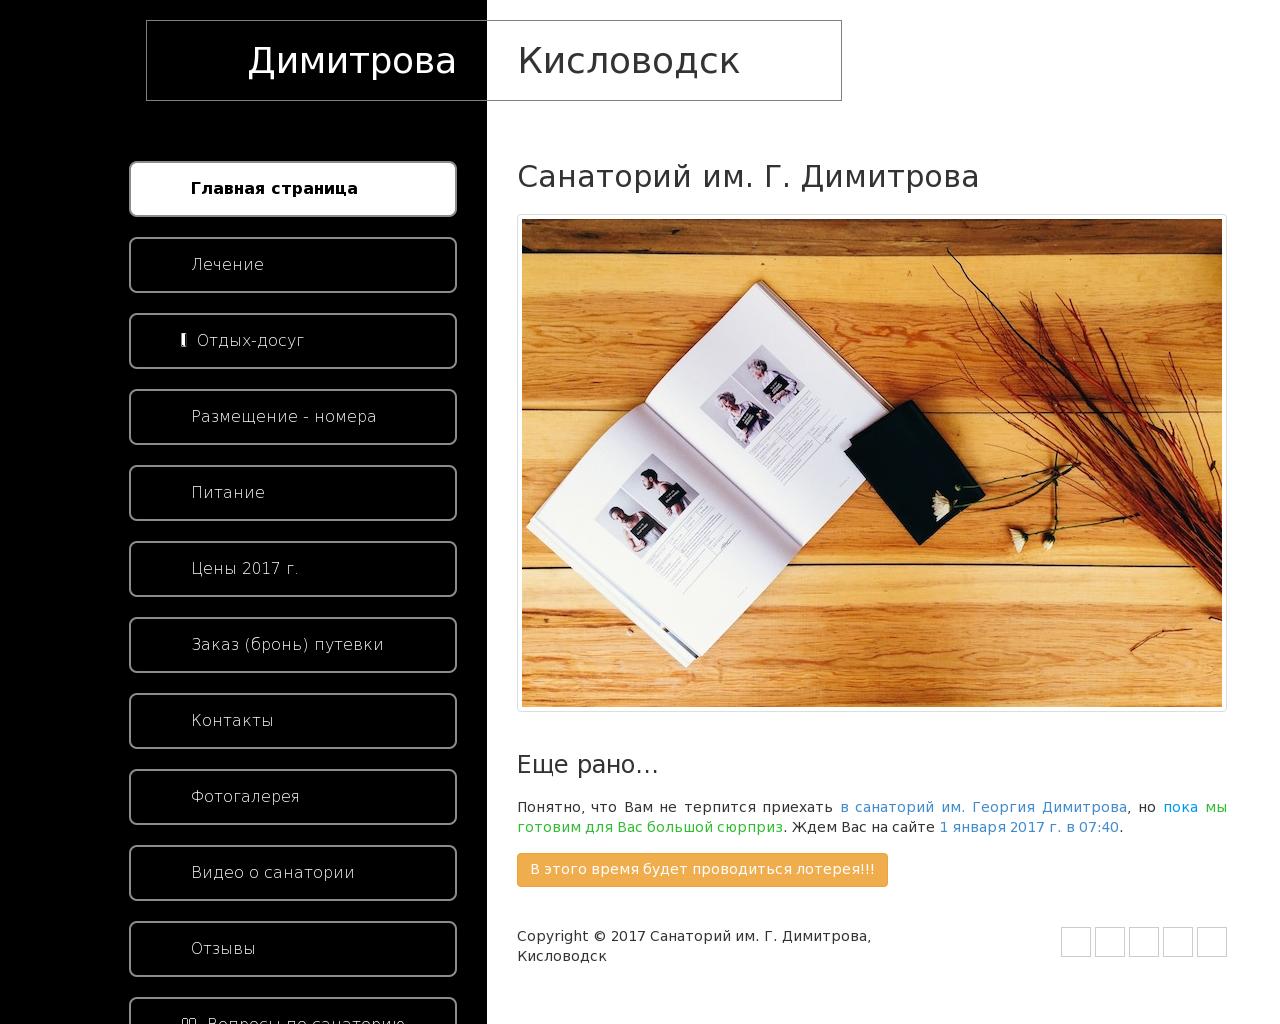 Изображение сайта dimitrova.ru в разрешении 1280x1024